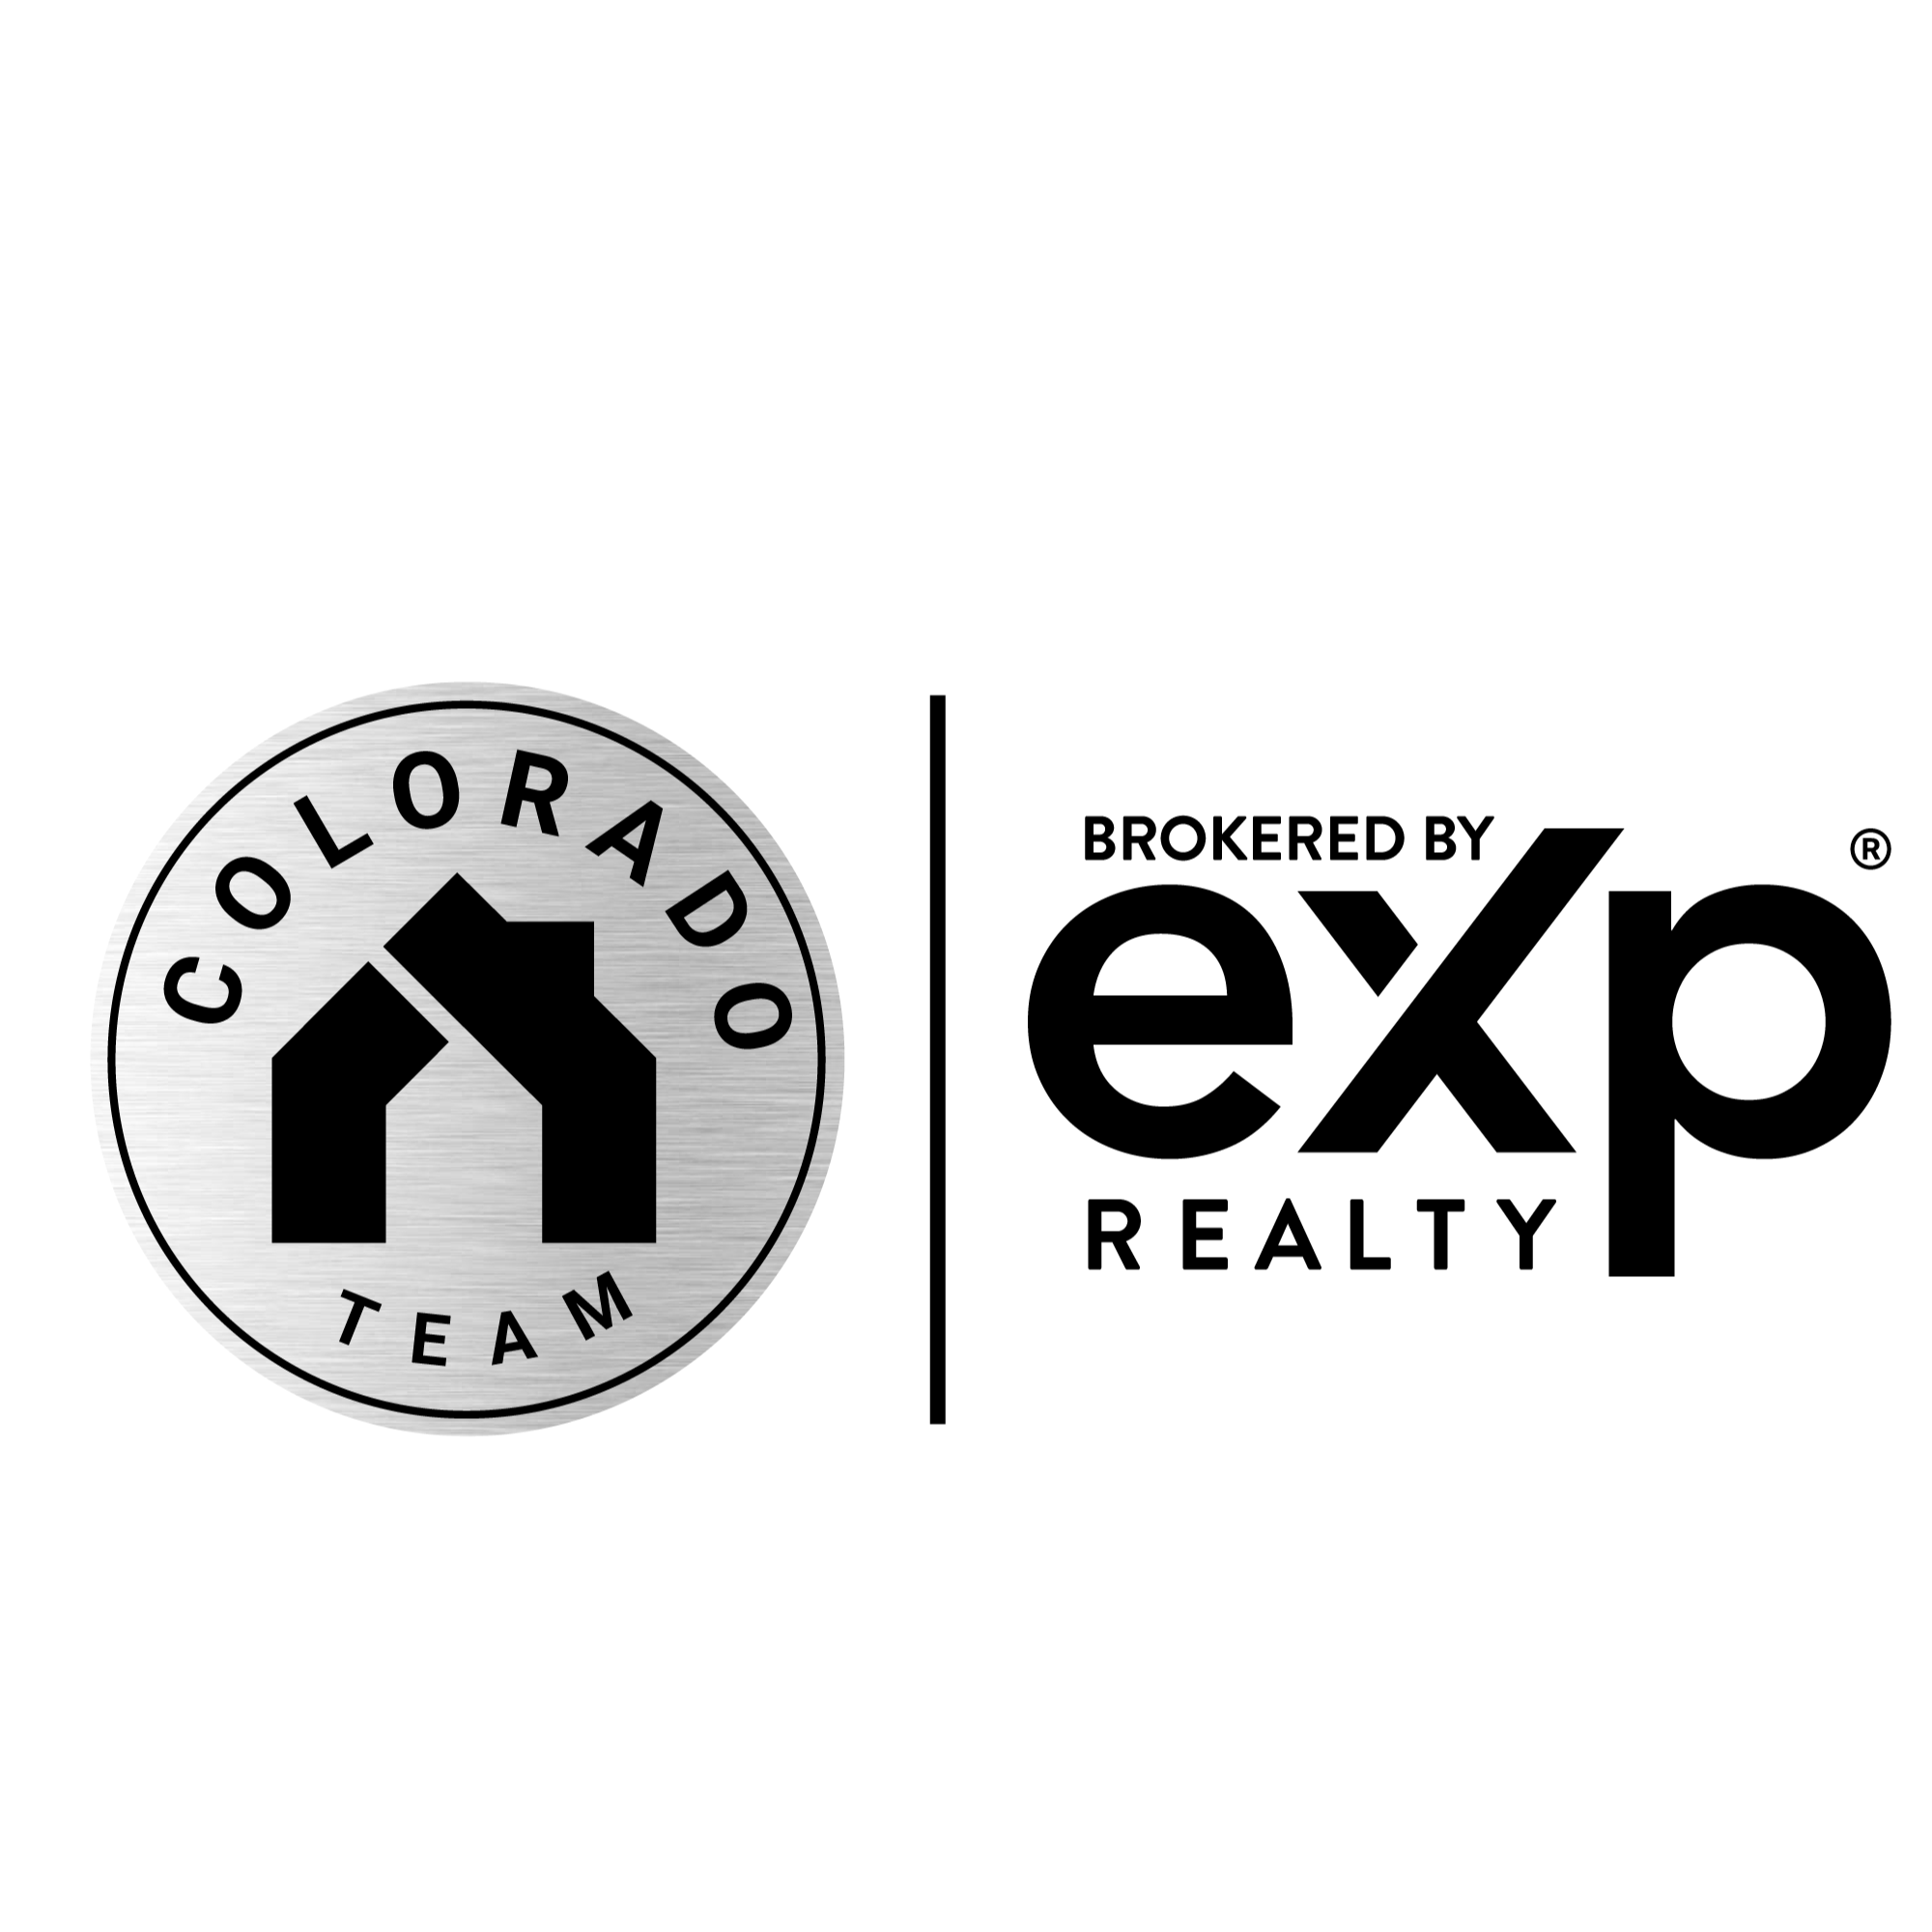 Blair Dinkins, REALTOR | Colorado Team Real Estate | eXp Realty